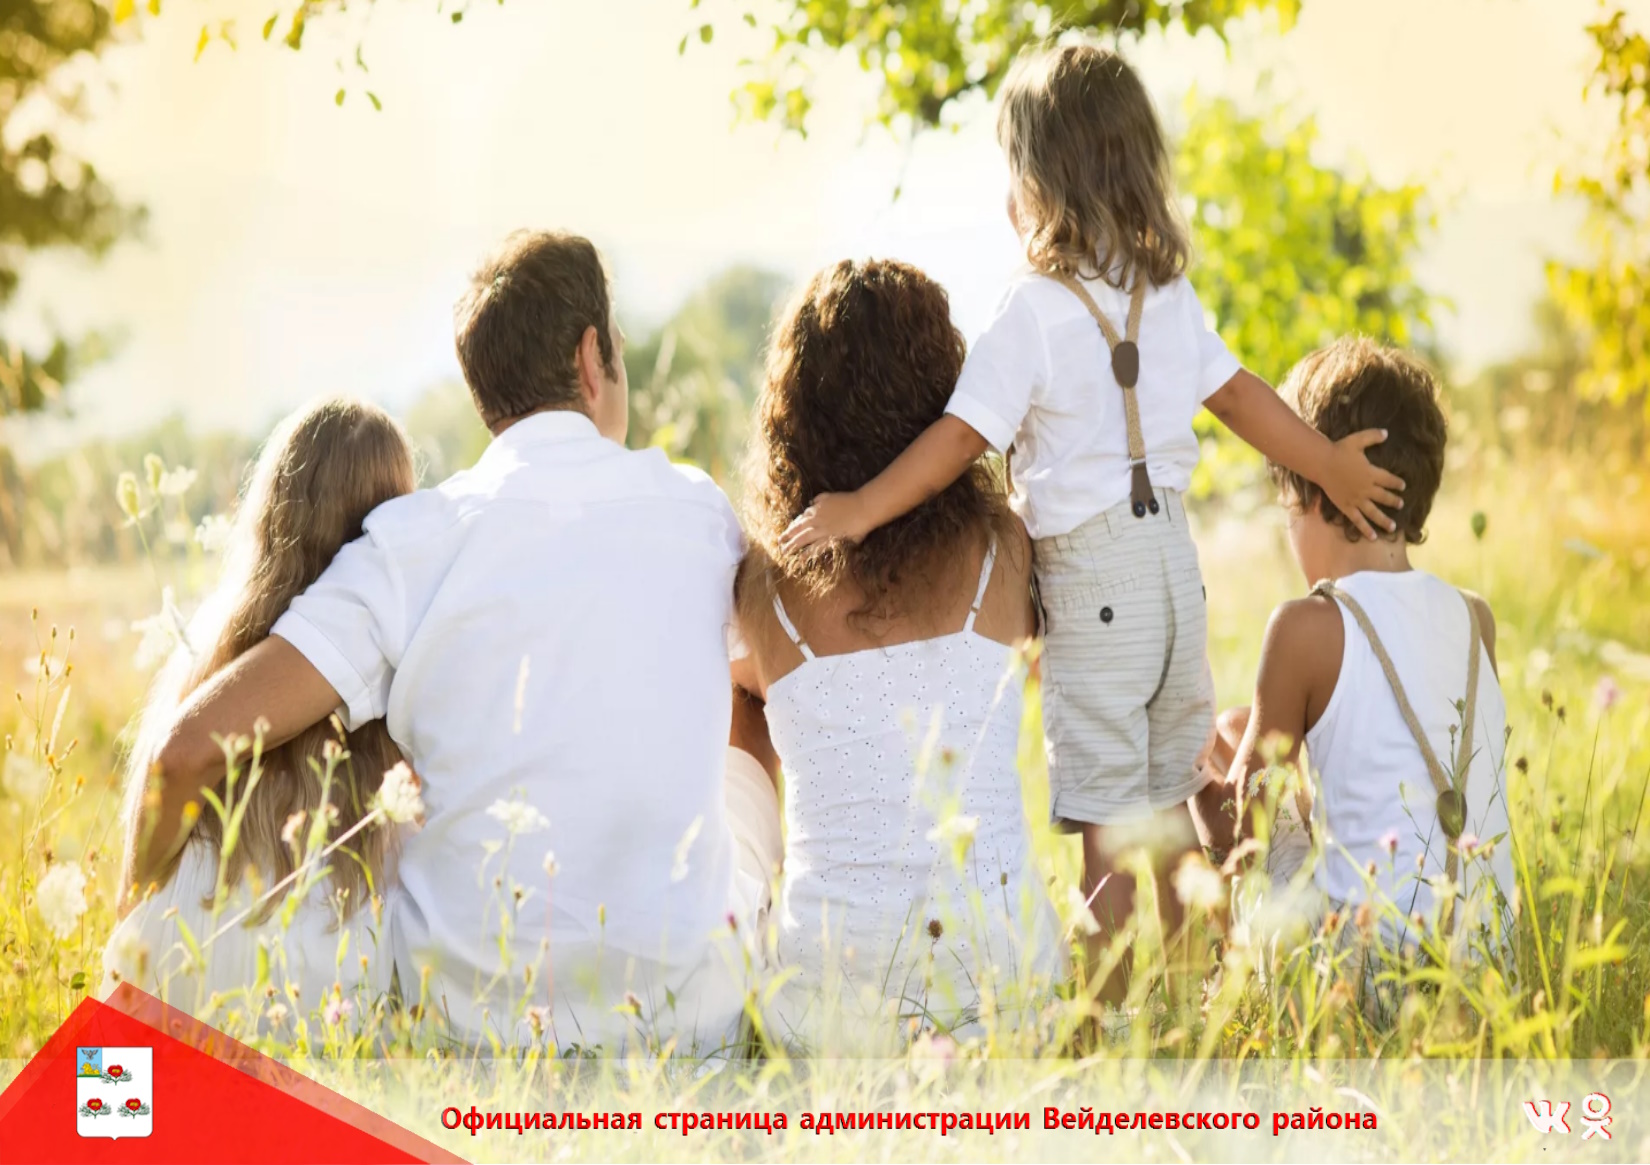 4 сентября в Белгородской области отмечается День многодетной семьи.